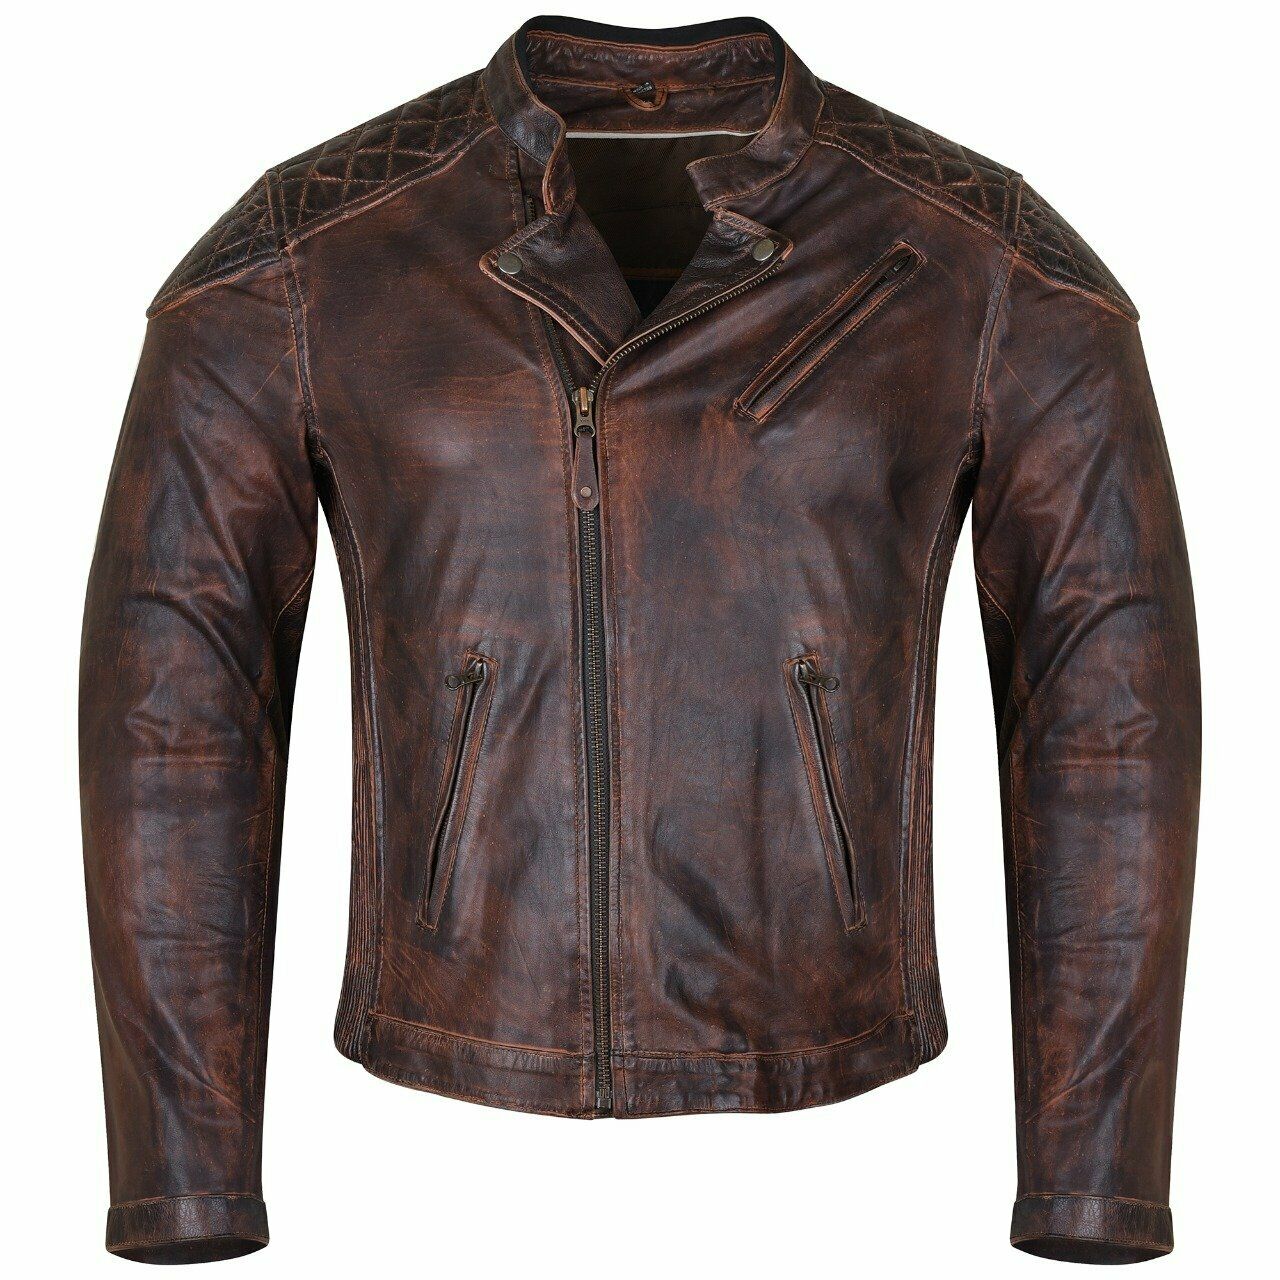 Vance Leather HMM521VB Vintage Leather Padded MC Jacket